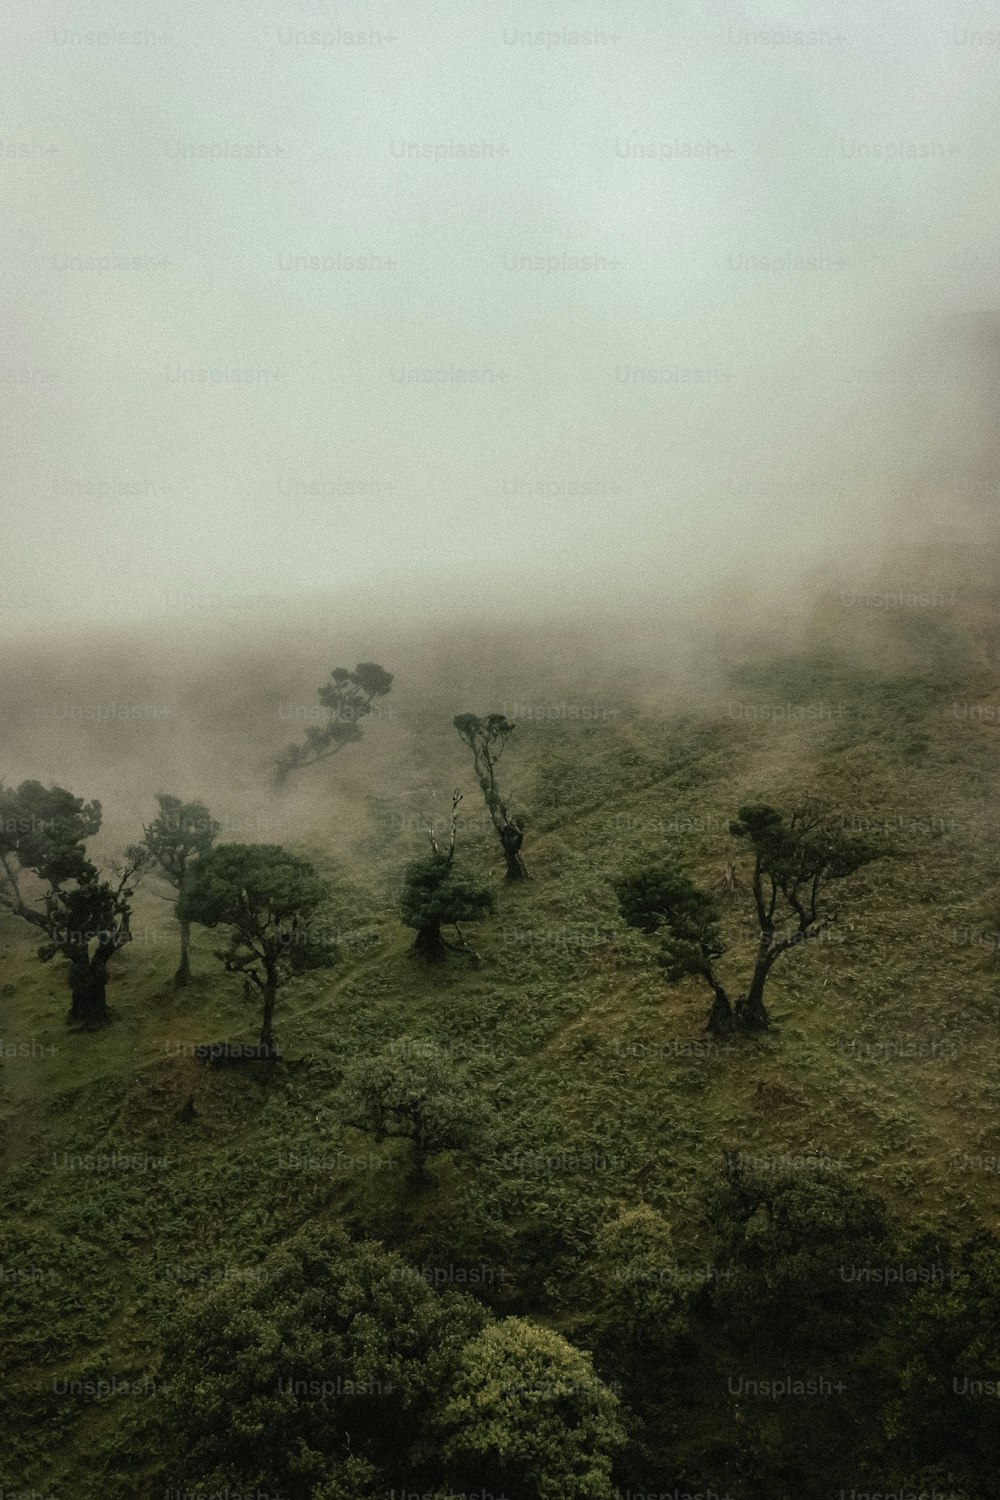 Un groupe d’arbres sur une colline couverte de brouillard